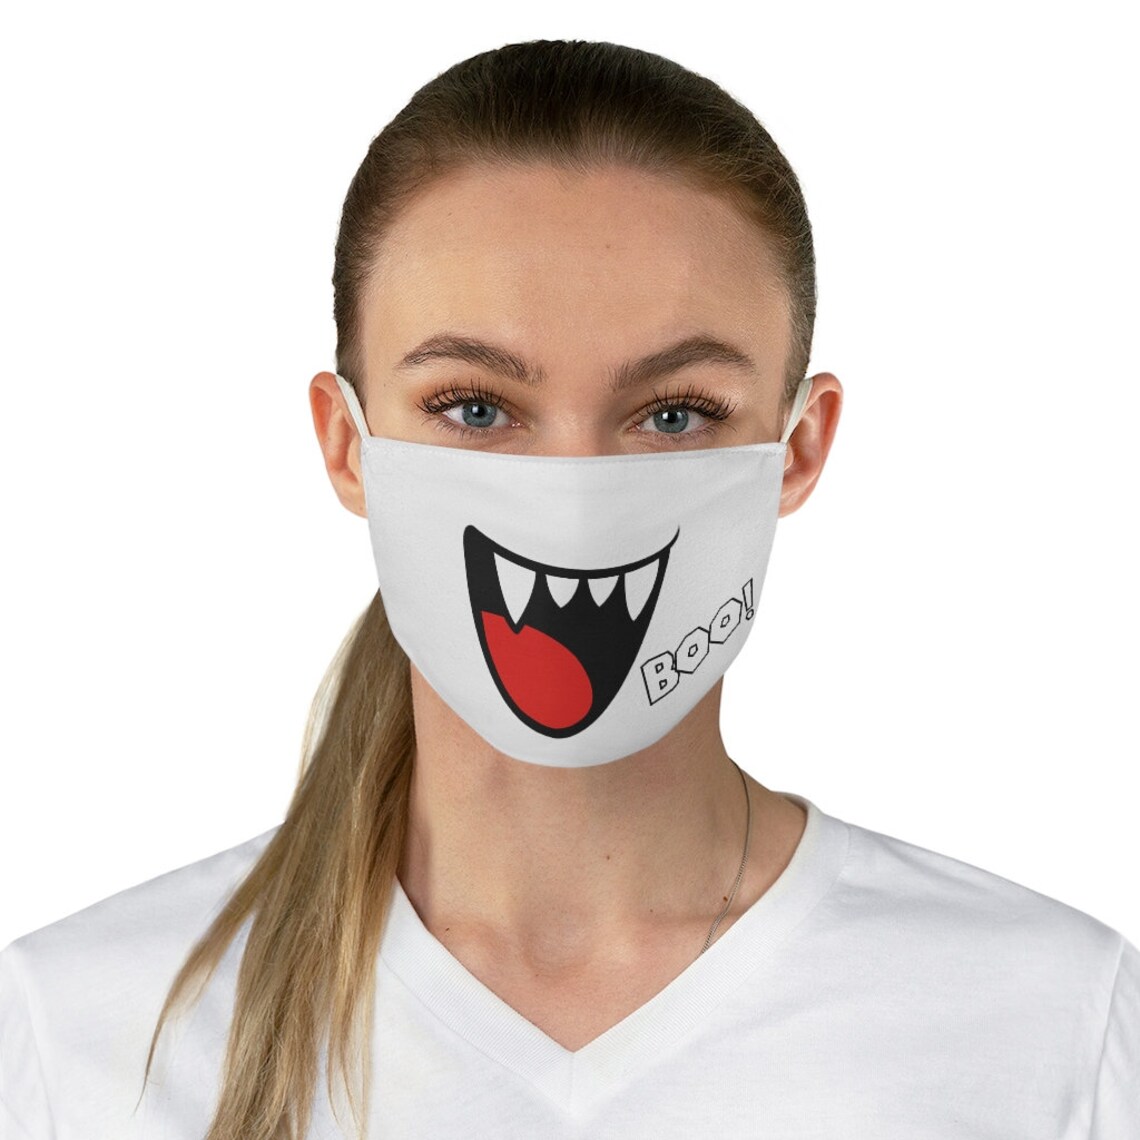 Boo S Mario face mask | Etsy